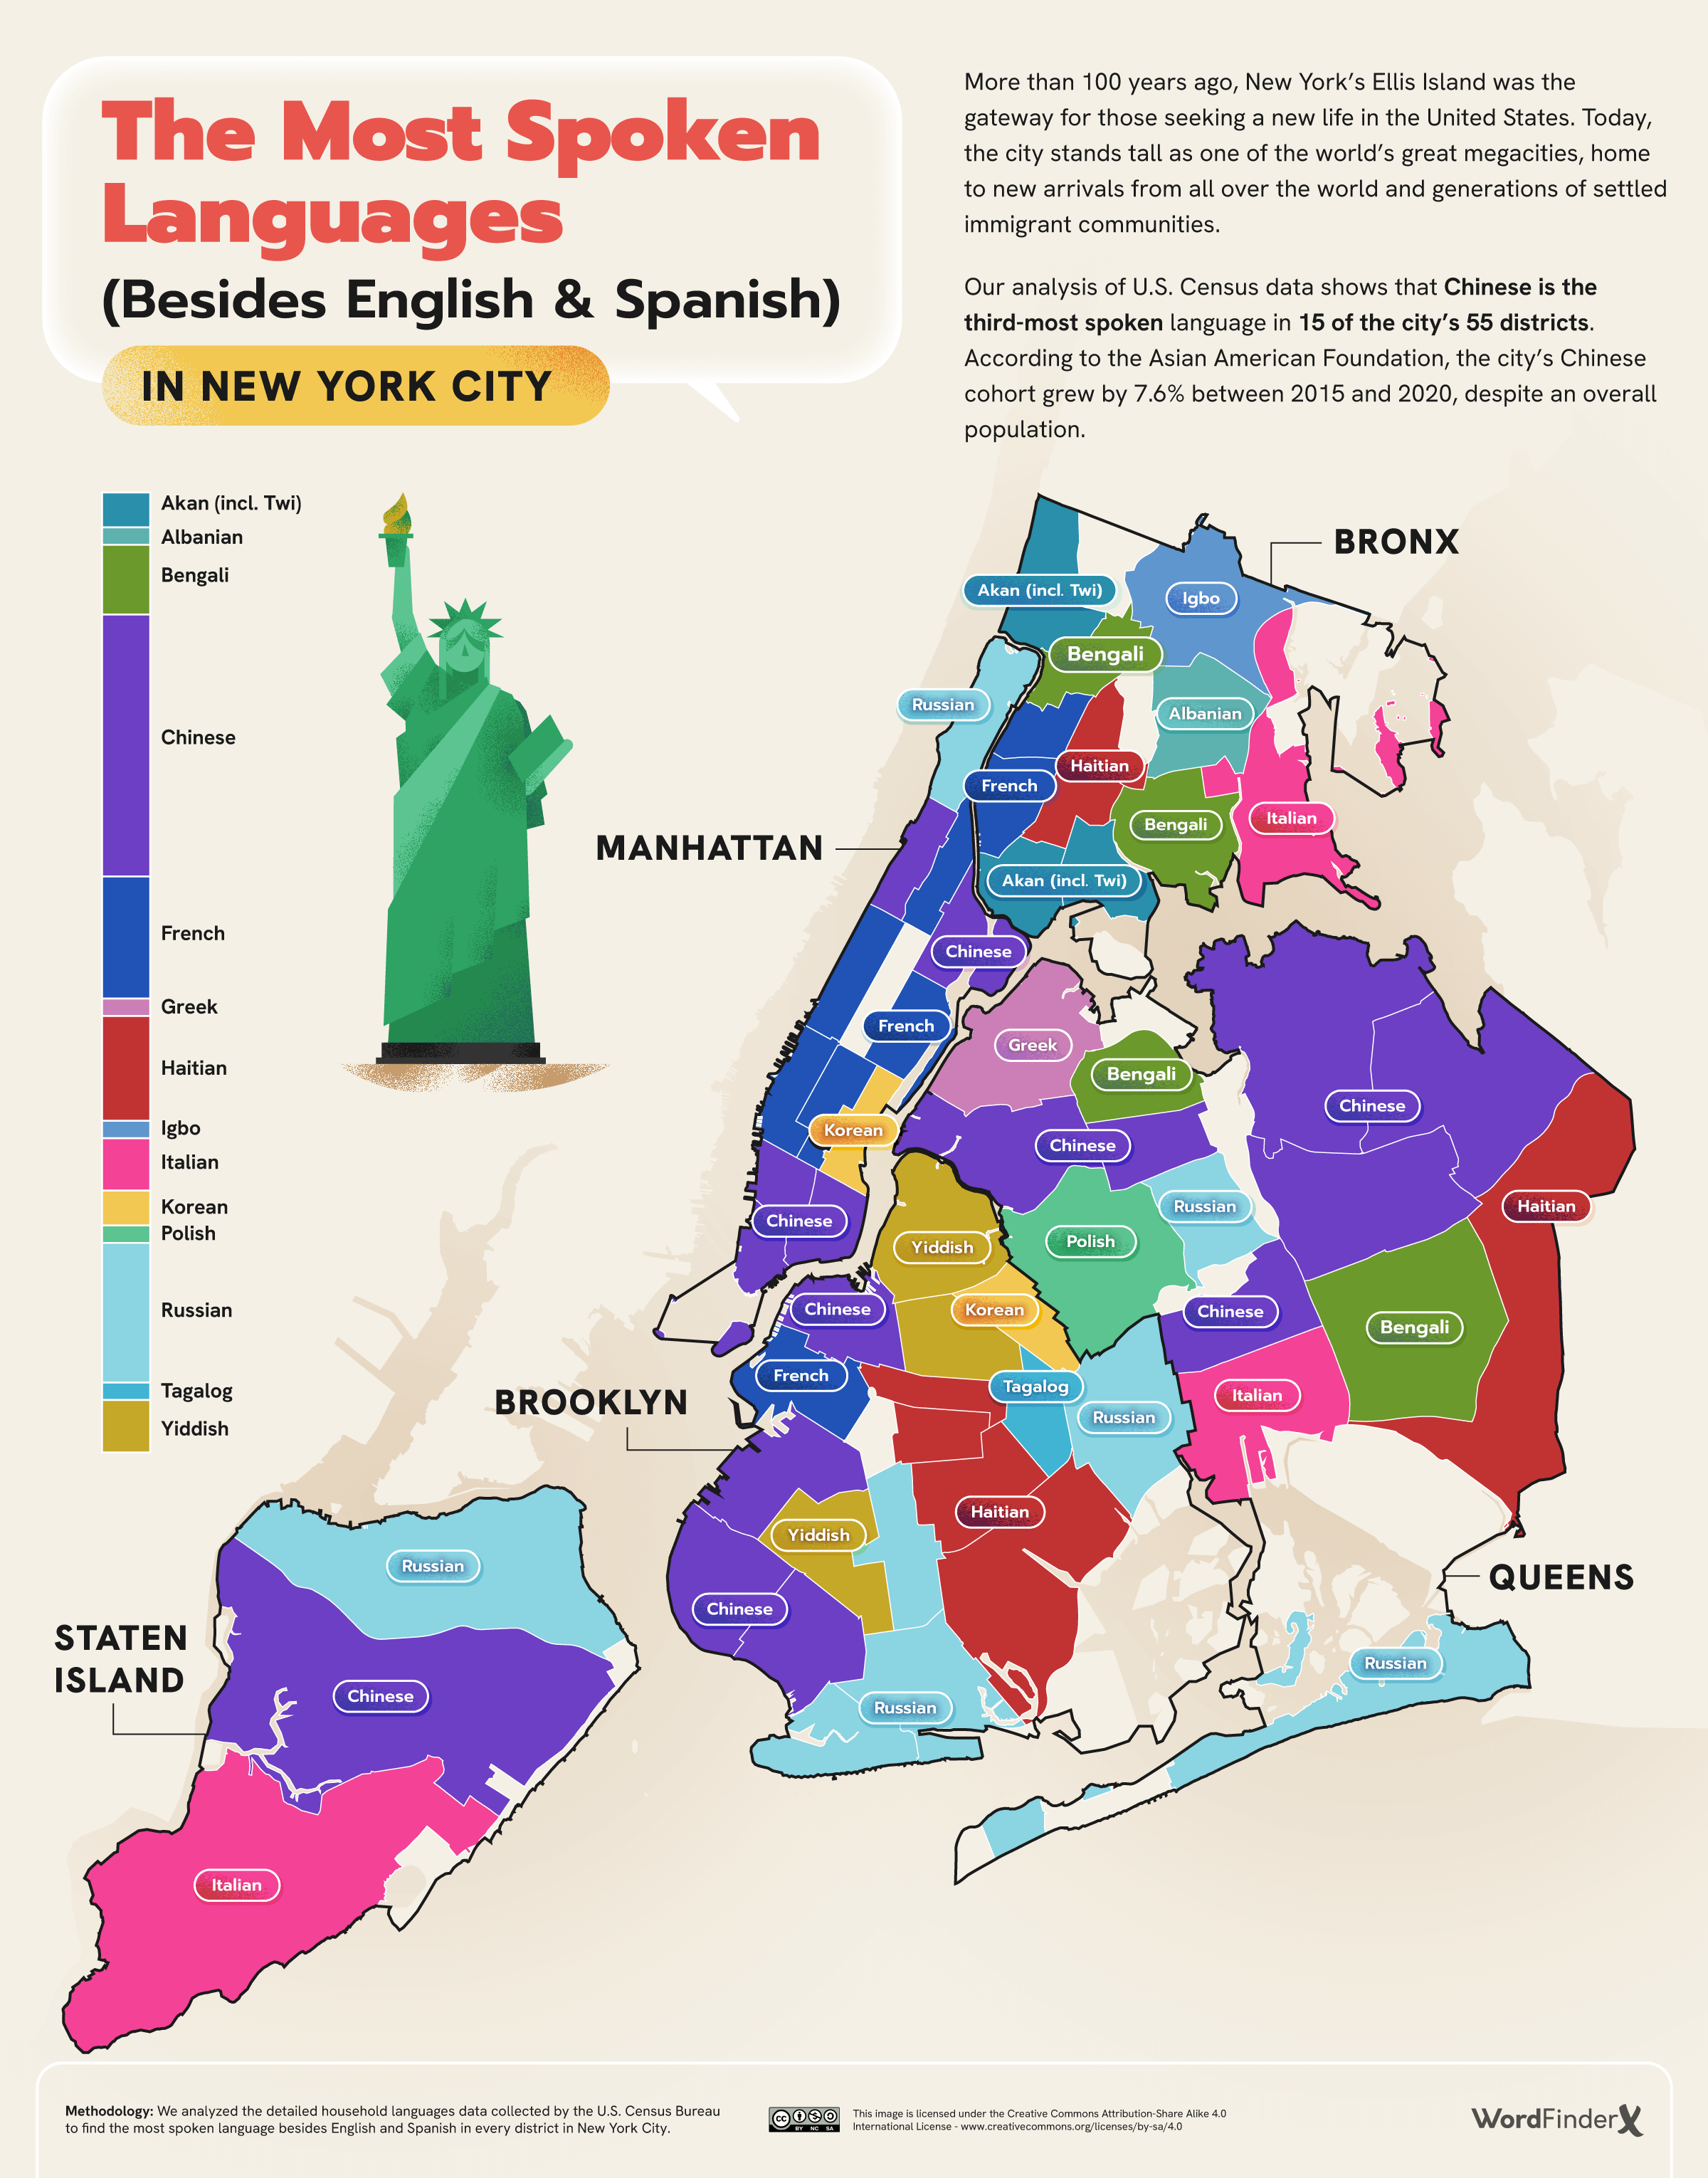 Los-idiomas-más-hablados-además-del-inglés-español-en-la-ciudad-de-Nueva-York